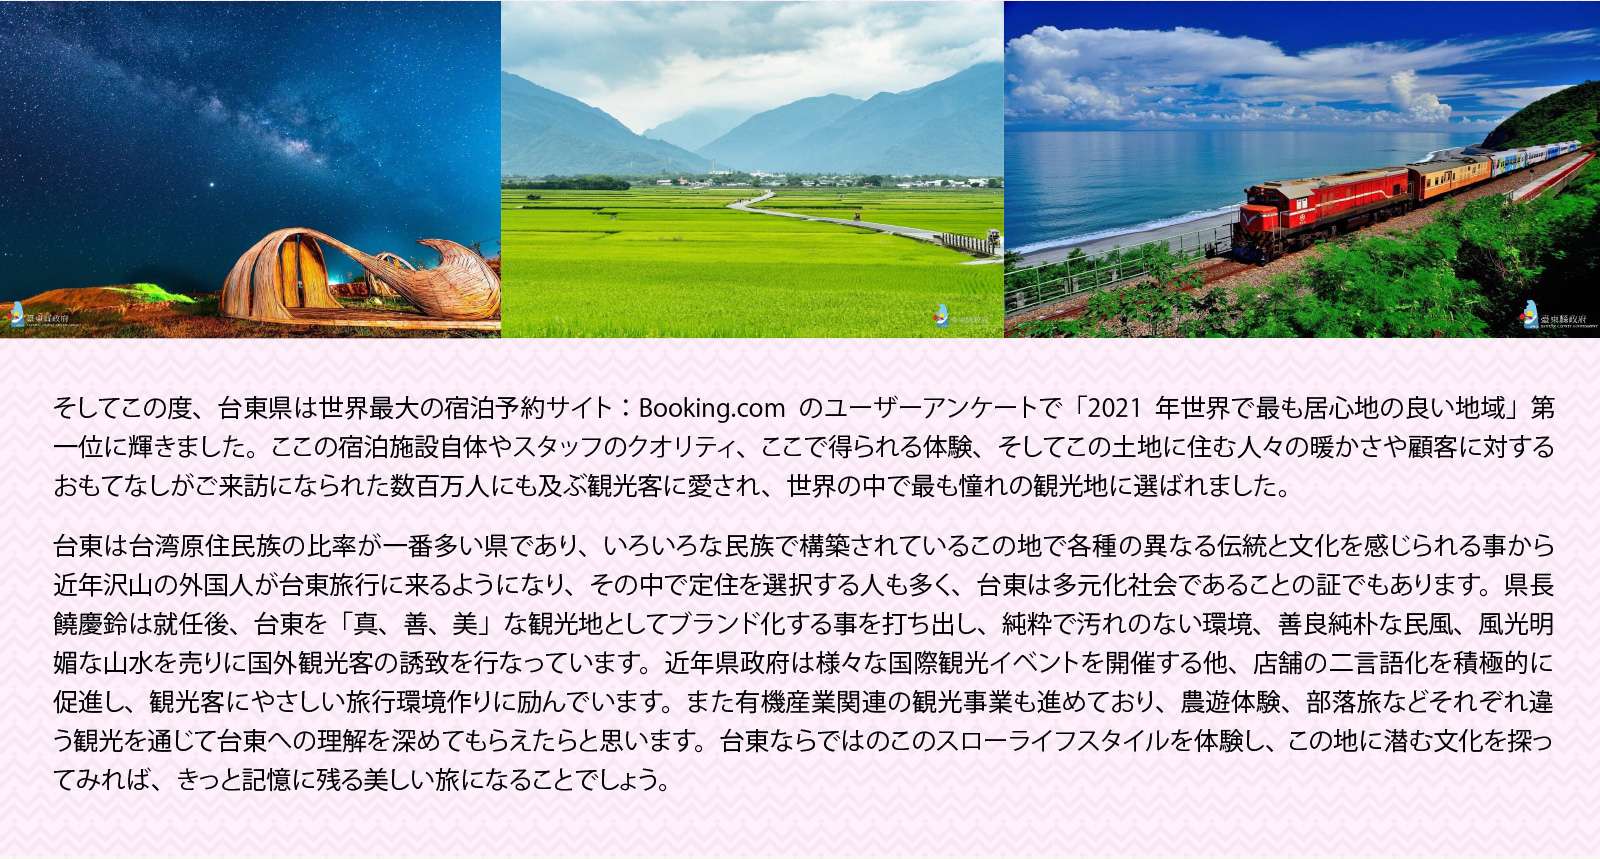 そしてこの度、台東県は世界最大の宿泊予約サイト：Booking.comのユーザーアンケートで「2021年世界で最も居心地の良い地域」第一位に輝きました。ここの宿泊施設自体やスタッフのクオリティ、ここで得られる体験、そしてこの土地に住む人々の暖かさや顧客に対するおもてなしがご来訪になられた数百万人にも及ぶ観光客に愛され、世界の中で最も憧れの観光地に選ばれました。

台東は台湾原住民族の比率が一番多い県であり、いろいろな民族で構築されているこの地で各種の異なる伝統と文化を感じられる事から近年沢山の外国人が台東旅行に来るようになり、その中で定住を選択する人も多く、台東は多元化社会であることの証でもあります。県長饒慶鈴は就任後、台東を「真、善、美」な観光地としてブランド化する事を打ち出し、純粋で汚れのない環境、善良純朴な民風、風光明媚な山水を売りに国外観光客の誘致を行なっています。近年県政府は様々な国際観光イベントを開催する他、店舗の二言語化を積極的に促進し、観光客にやさしい旅行環境作りに励んでいます。また有機産業関連の観光事業も進めており、農遊体験、部落旅などそれぞれ違う観光を通じて台東への理解を深めてもらえたらと思います。台東ならではのこのスローライフスタイルを体験し、この地に潜む文化を探ってみれば、きっと記憶に残る美しい旅になることでしょう。